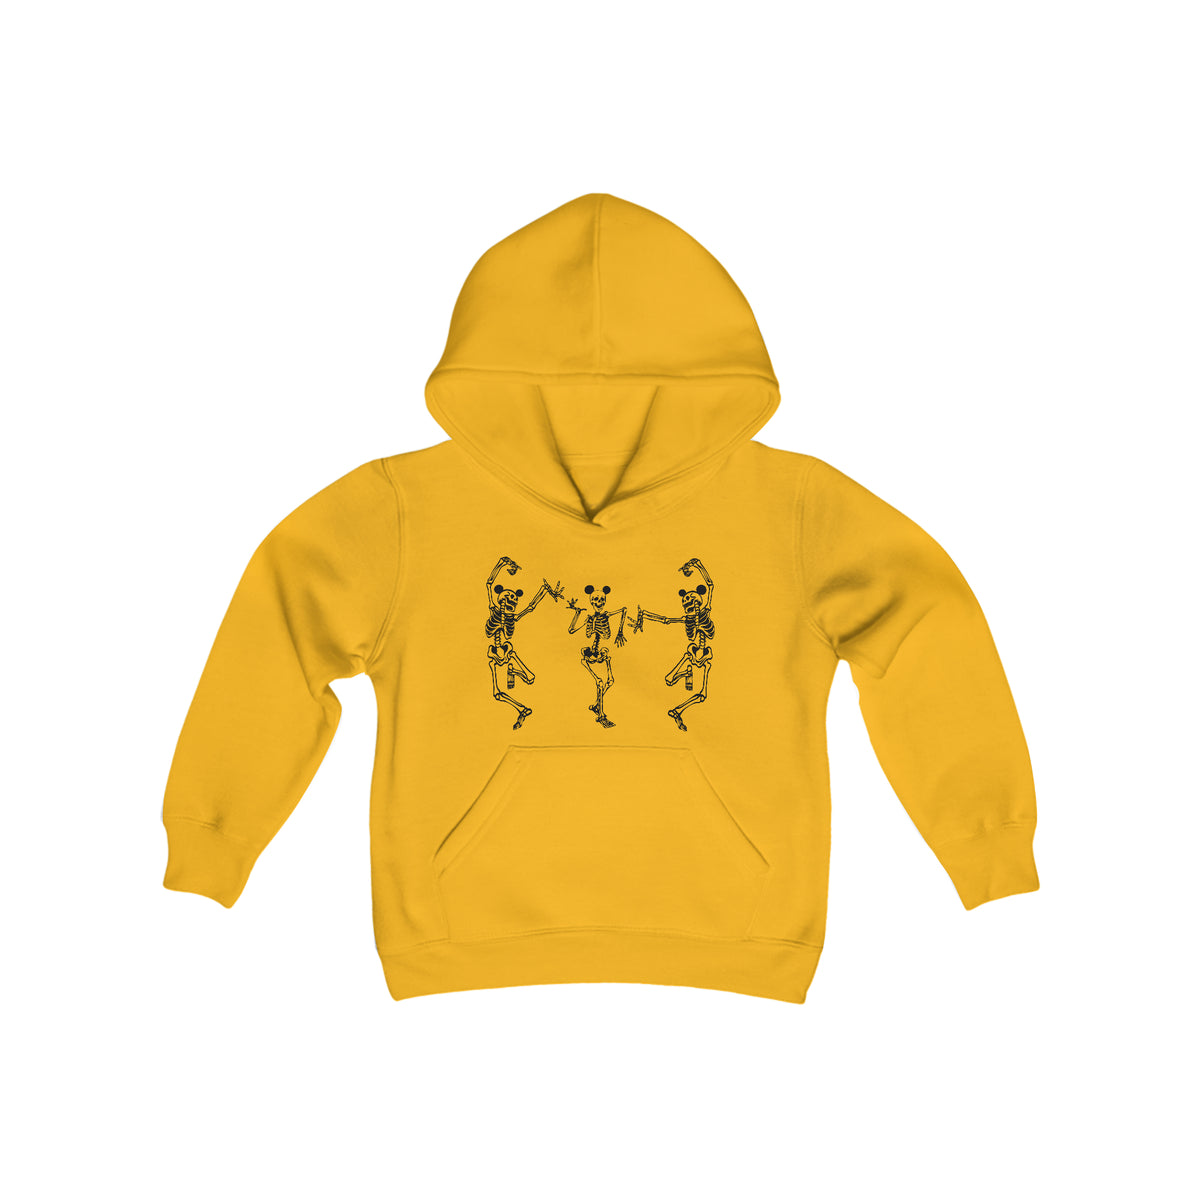 Dancing Skeletons with Ears Gildan Youth Heavy Blend Hooded Sweatshirt